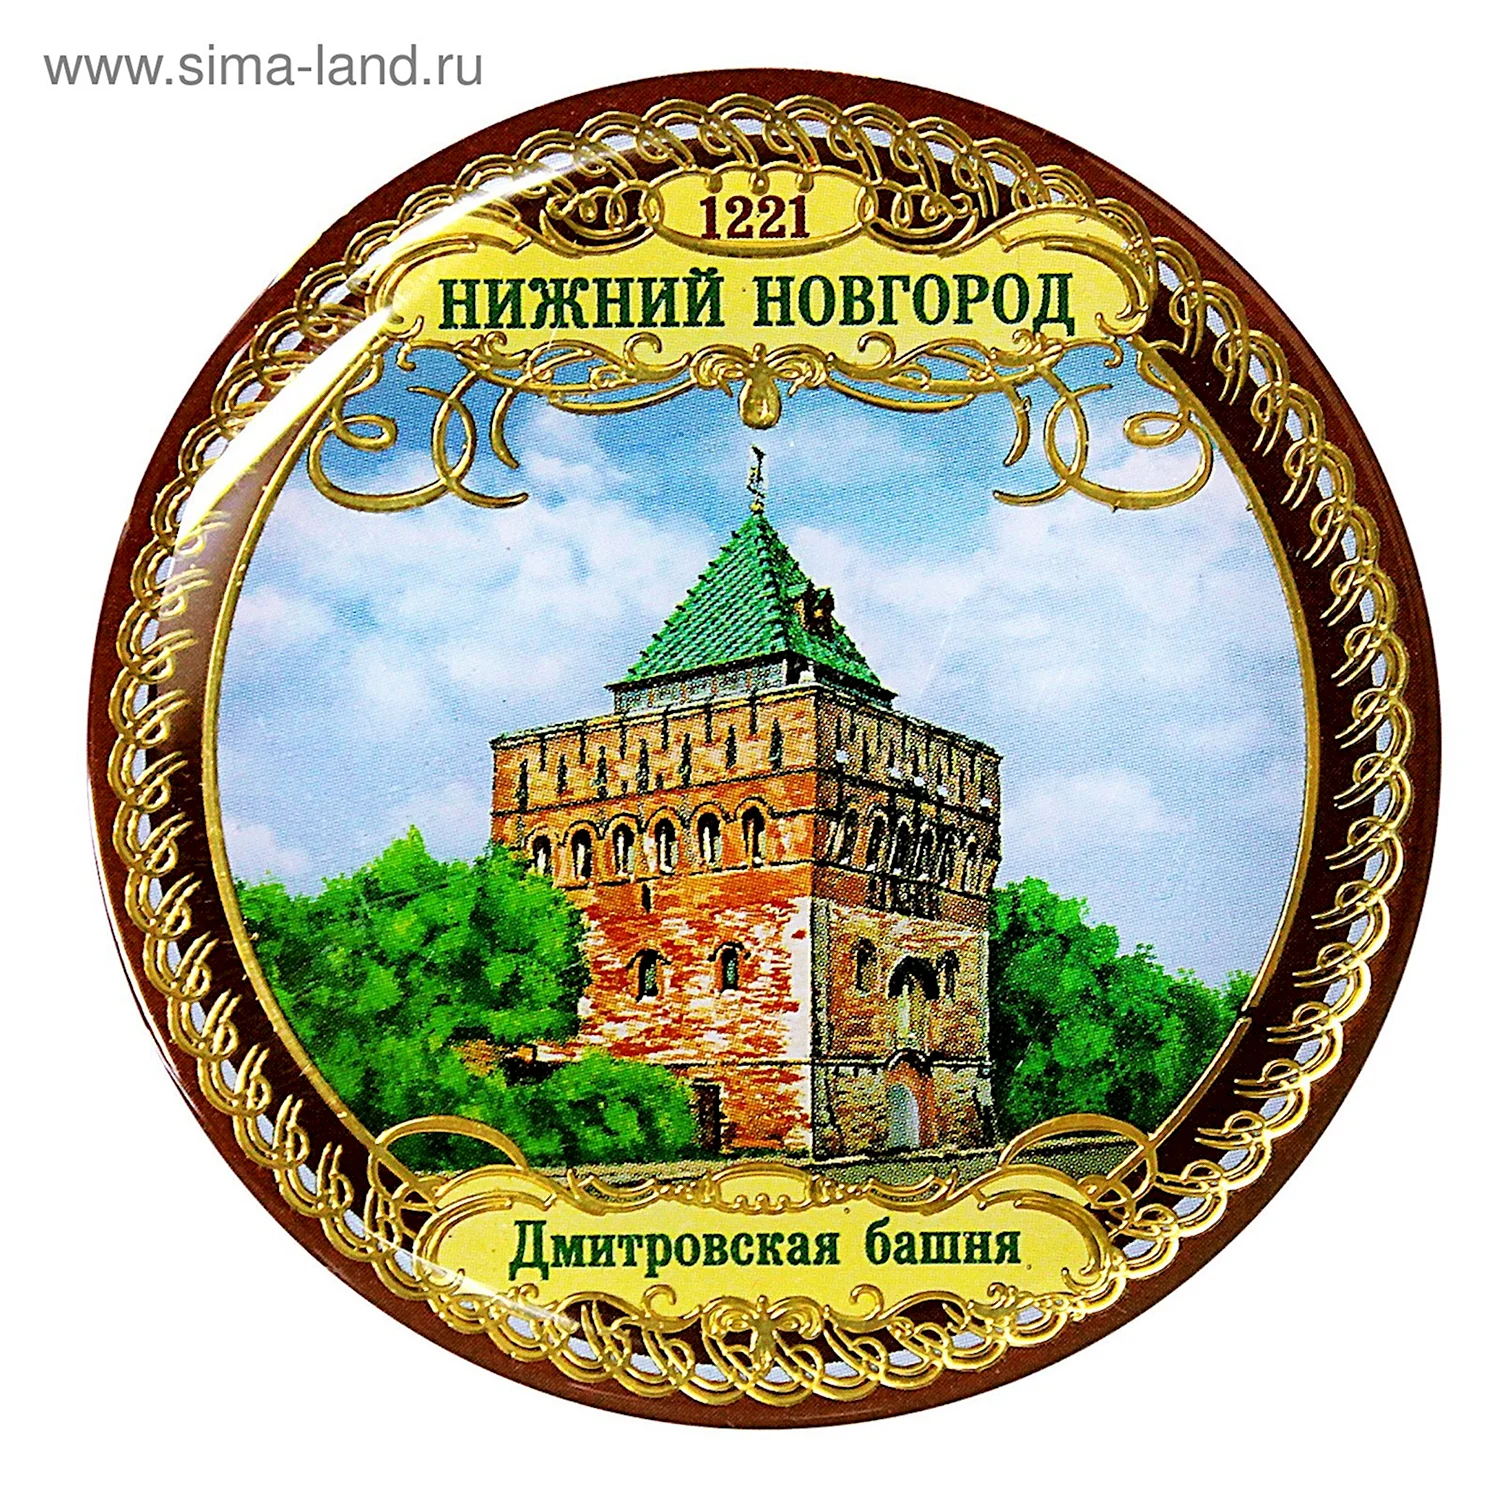 Символ города Нижний Новгород 800